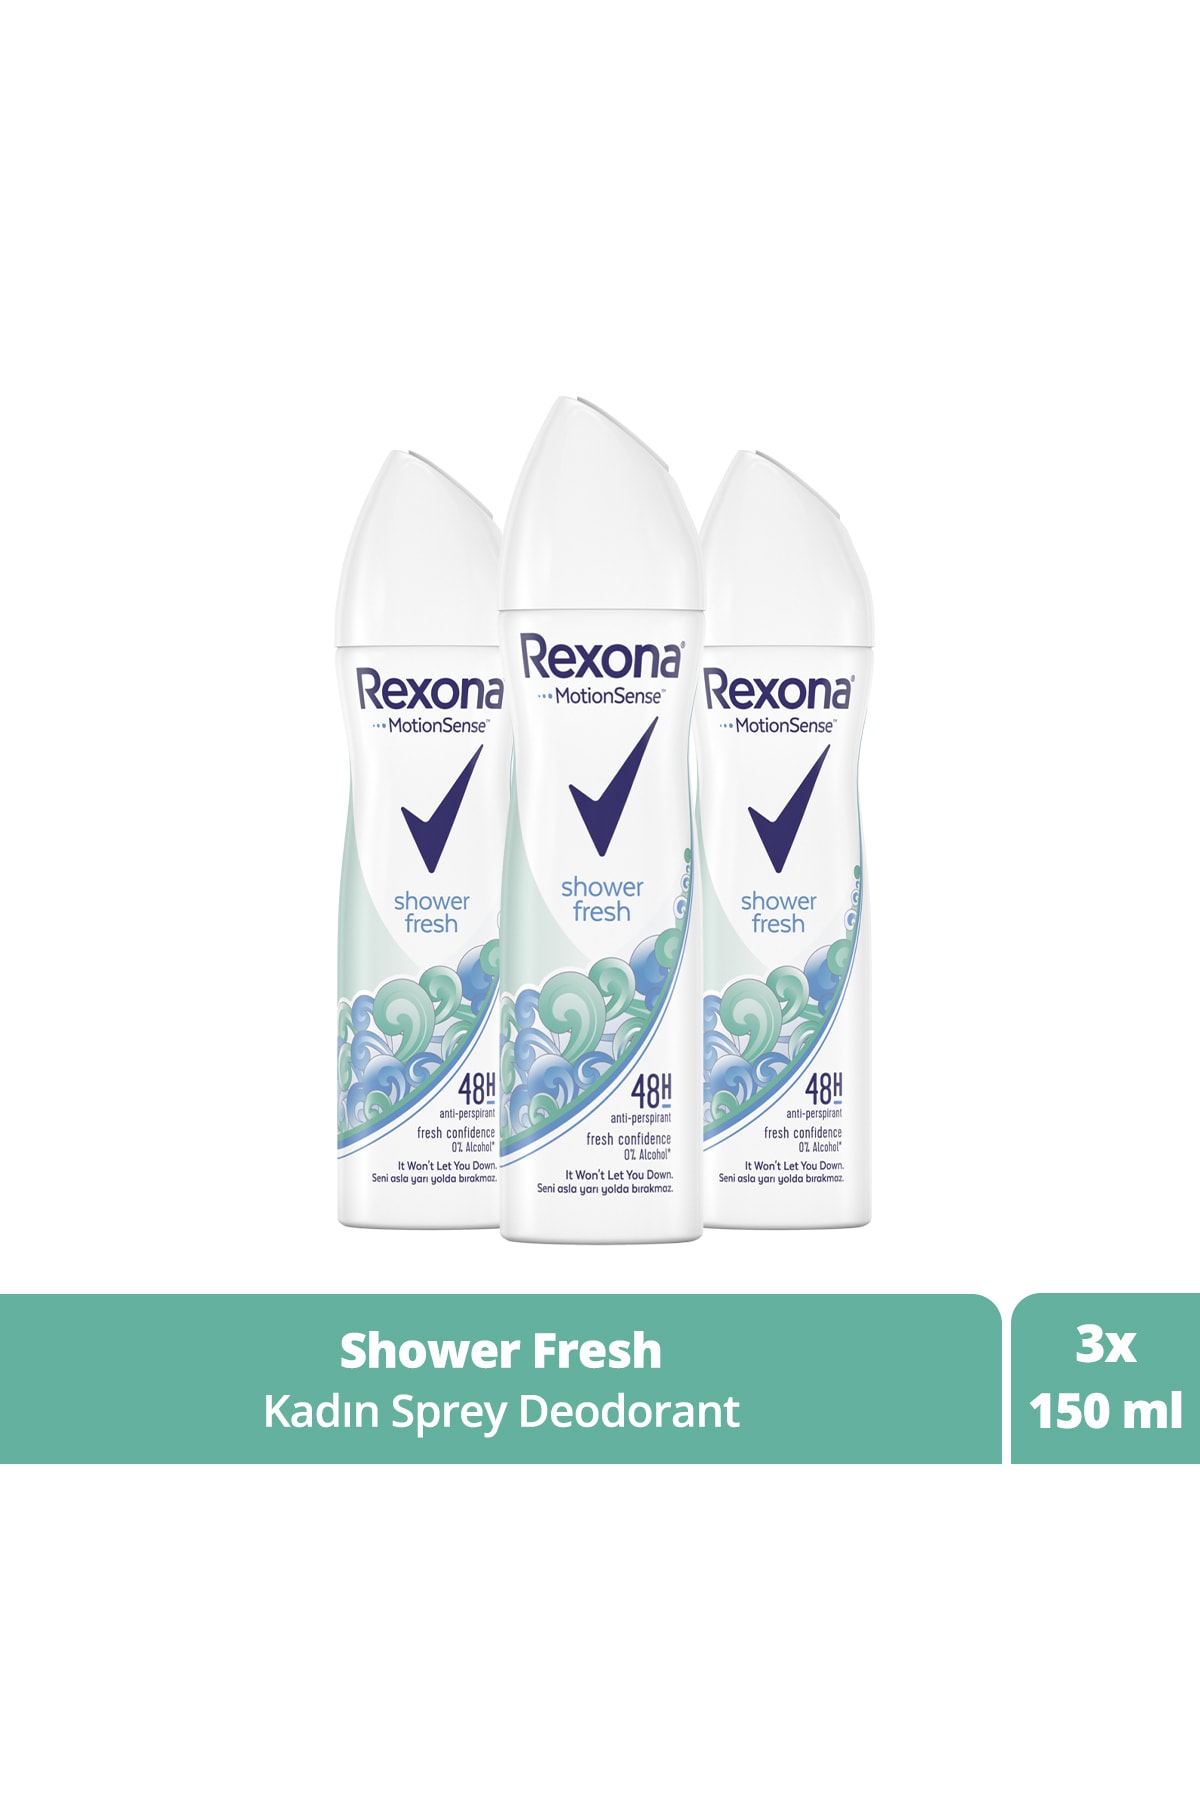 Rexona Kadın Sprey Deodorant Shower Fresh 150 Ml X3 Adet